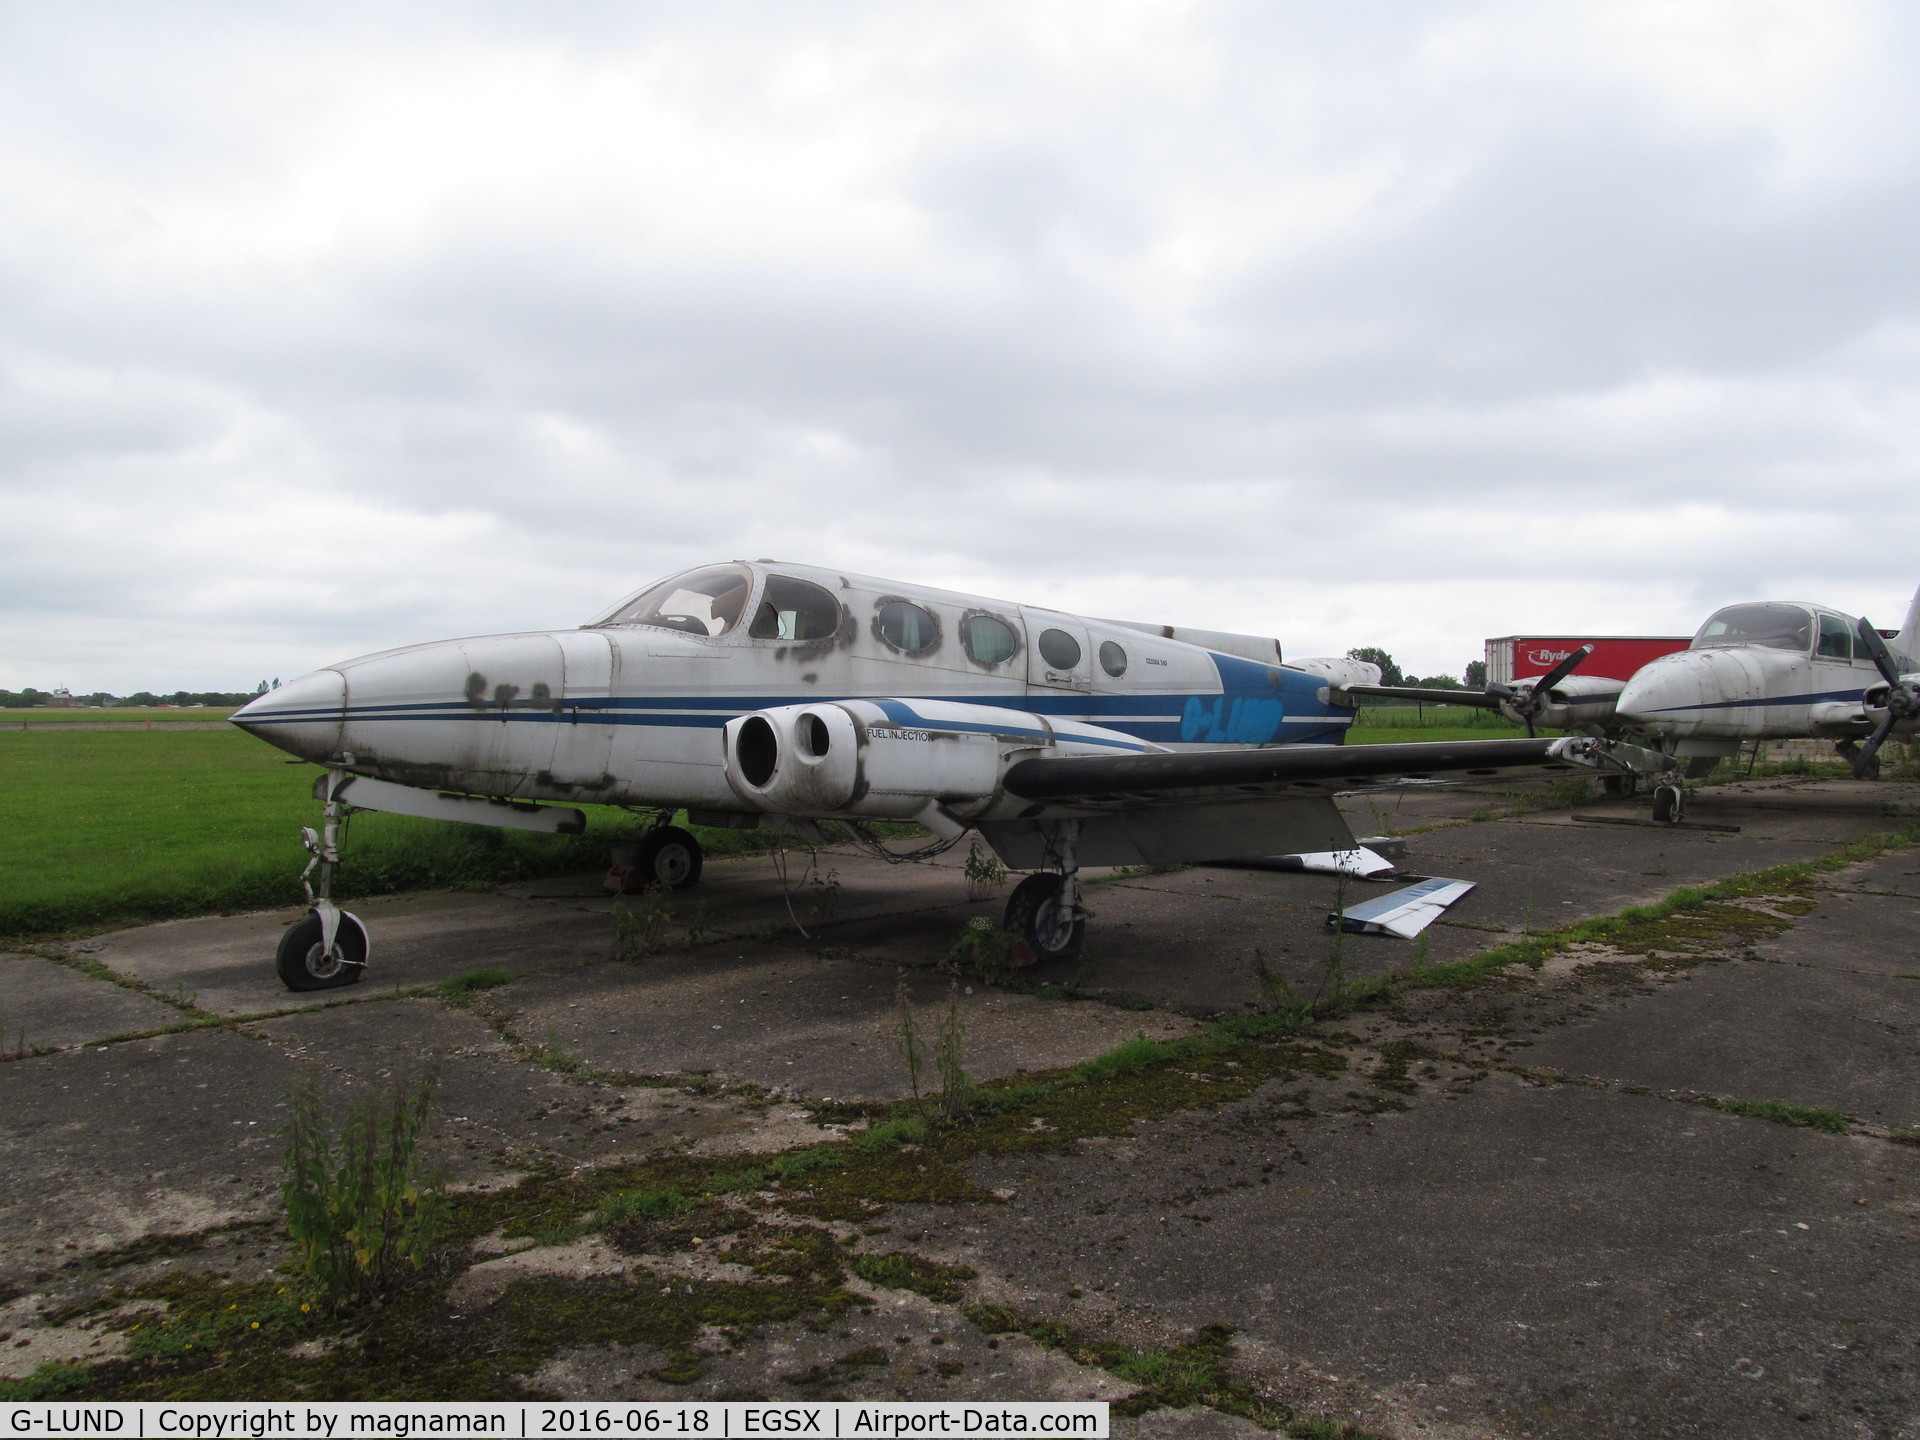 G-LUND, 1973 Cessna 340 C/N 340-0305, wrecked